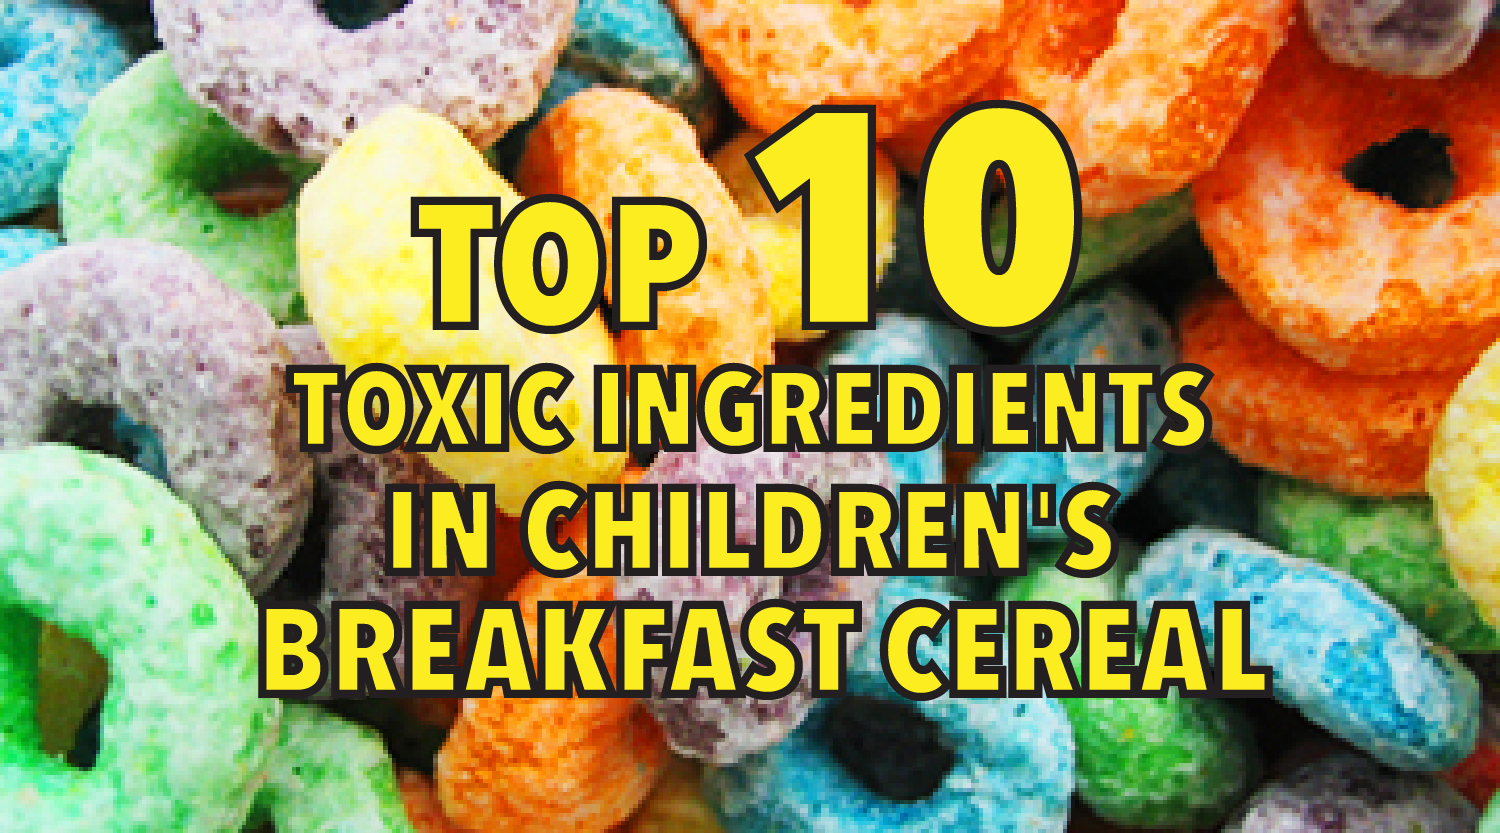 Top 10 Toxic Ingredients in Children's Breakfast Cereal